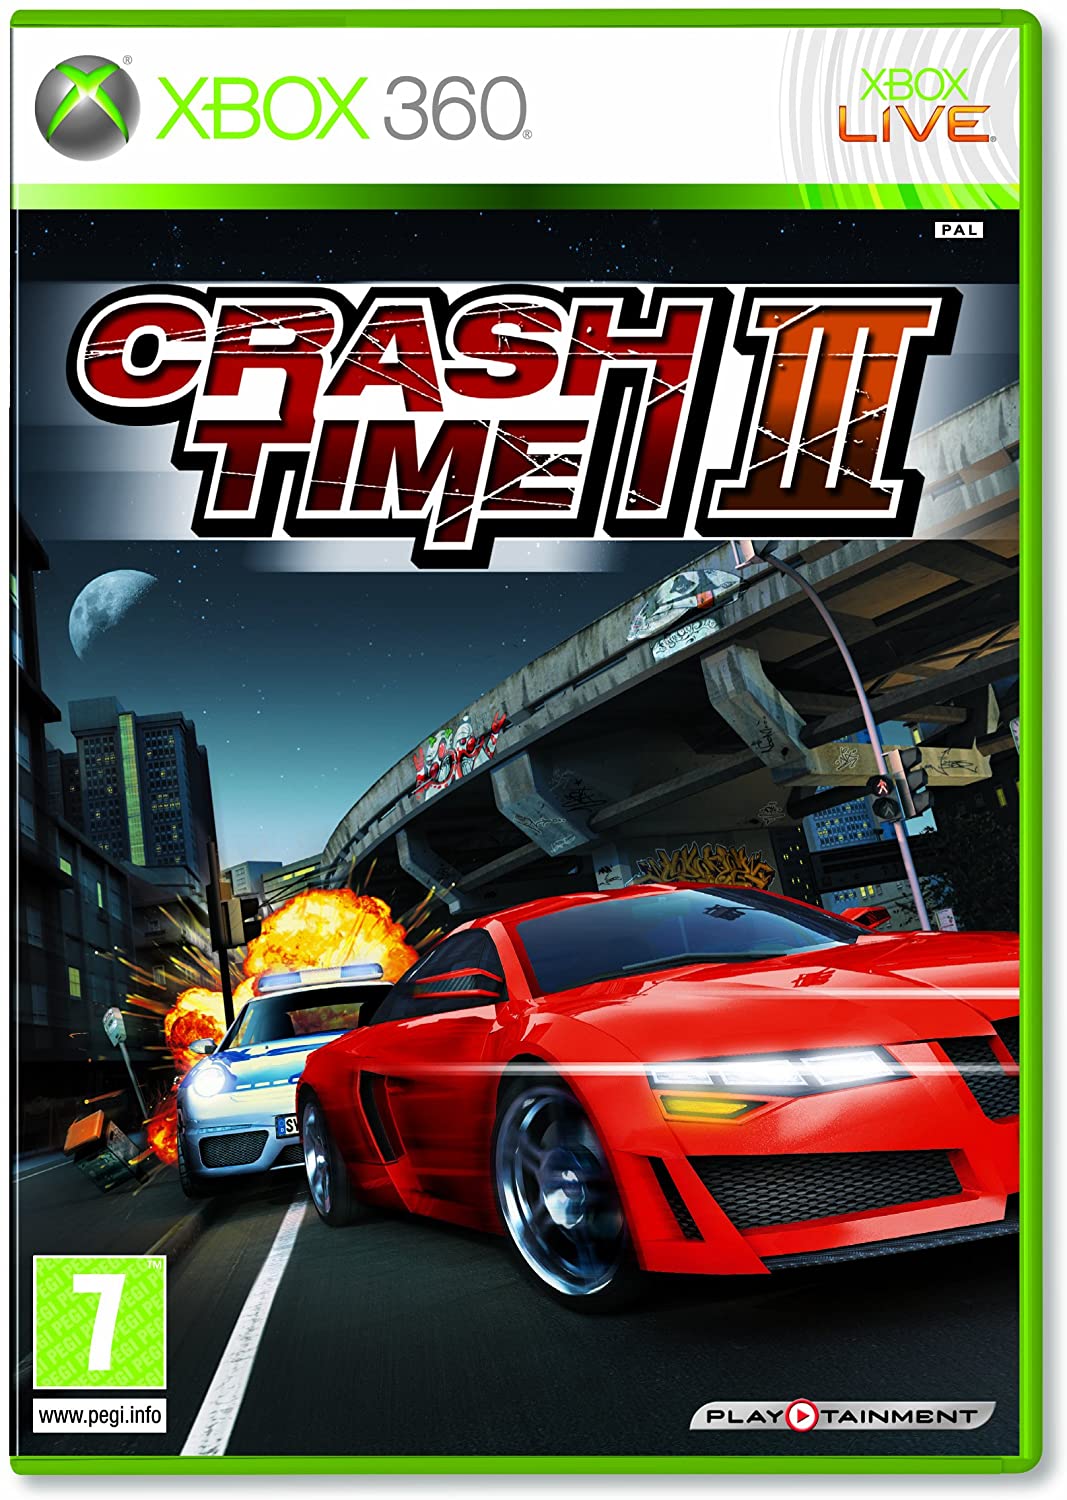 Crash Time 3 (Crash Time III)